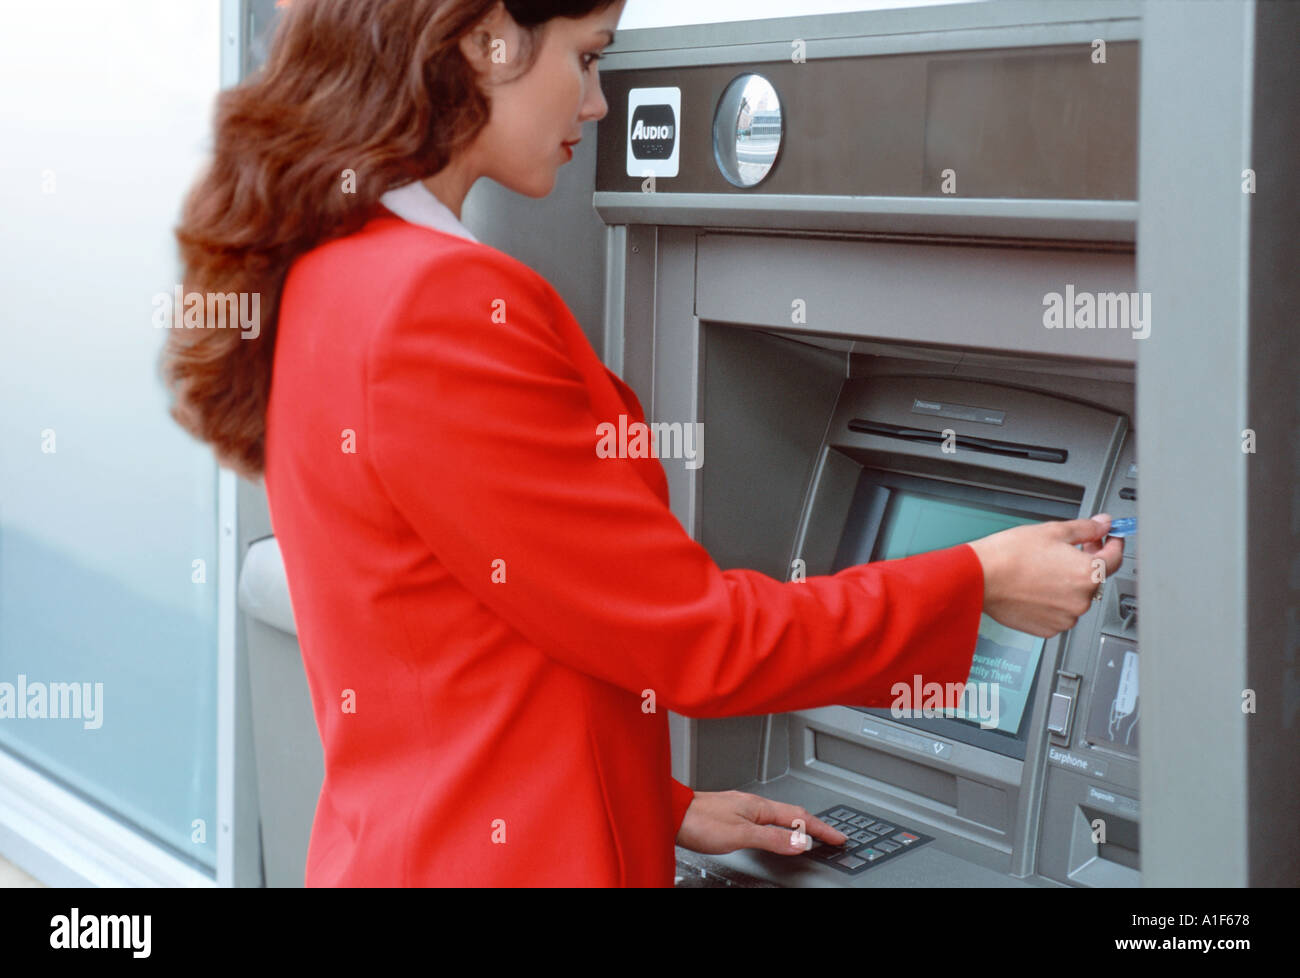 Businesswoman using cash machine Stock Photo